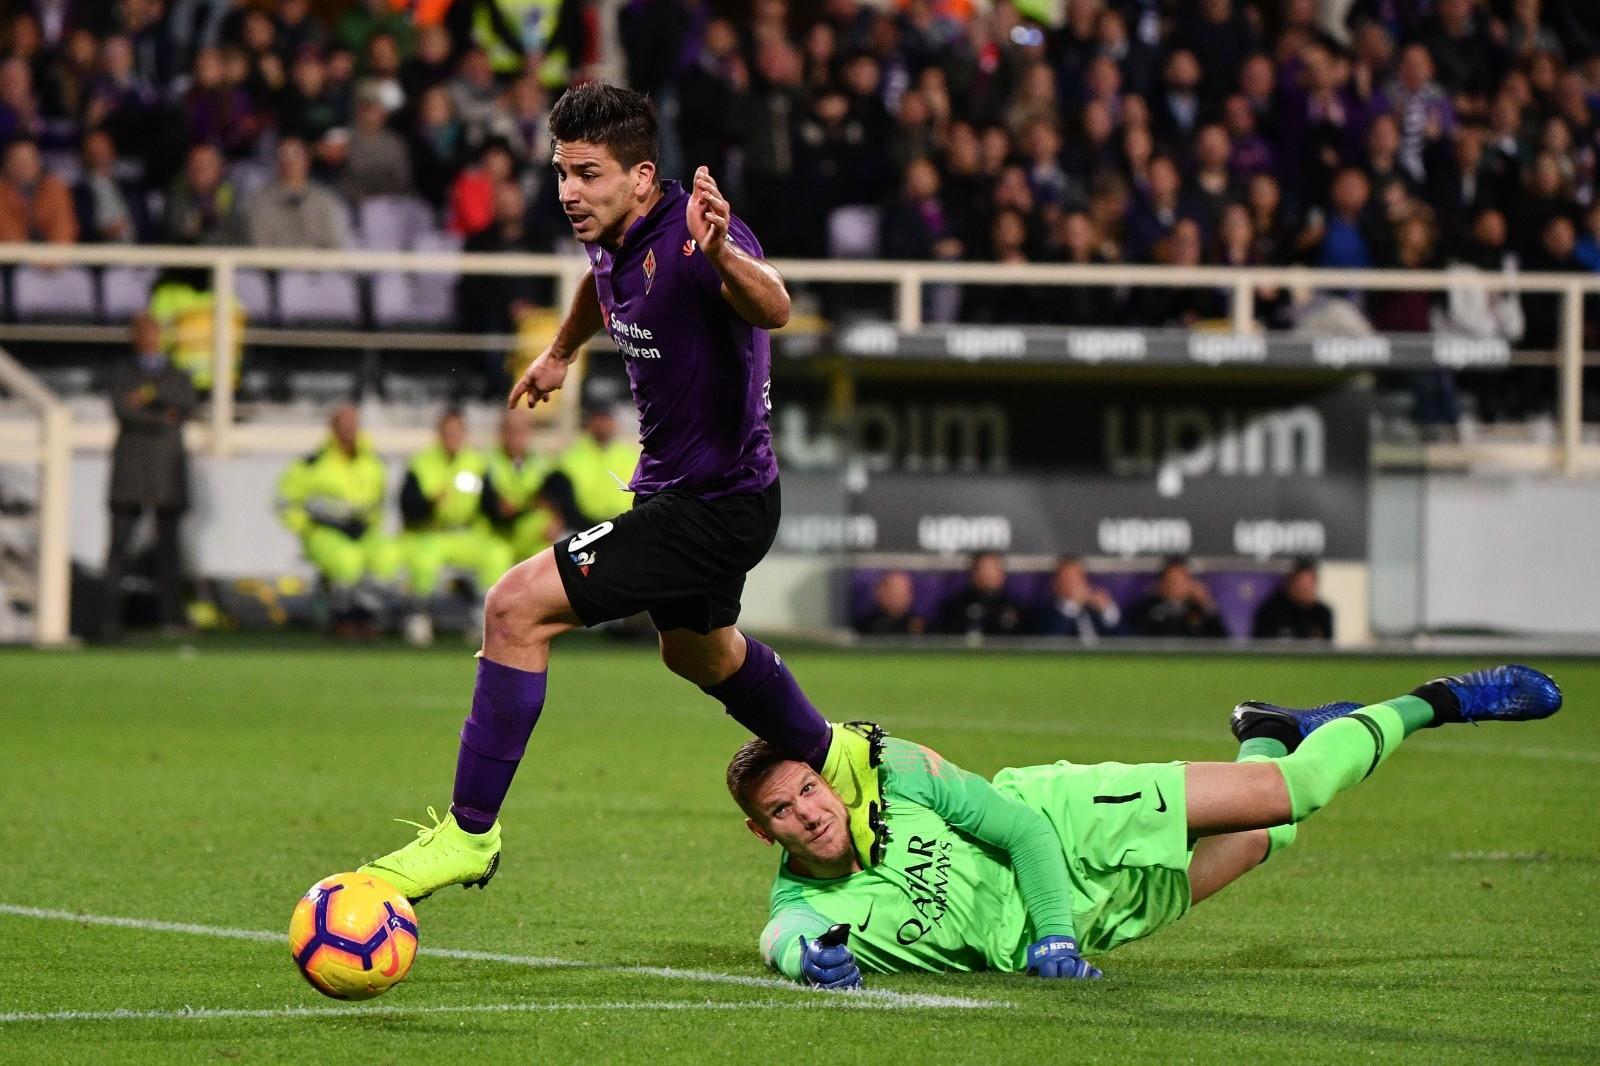 Fiorentina-Roma 1-1: Simeone rifila un calcio in faccia a Olsen, per il VAR è calcio di rigore, di LaPresse